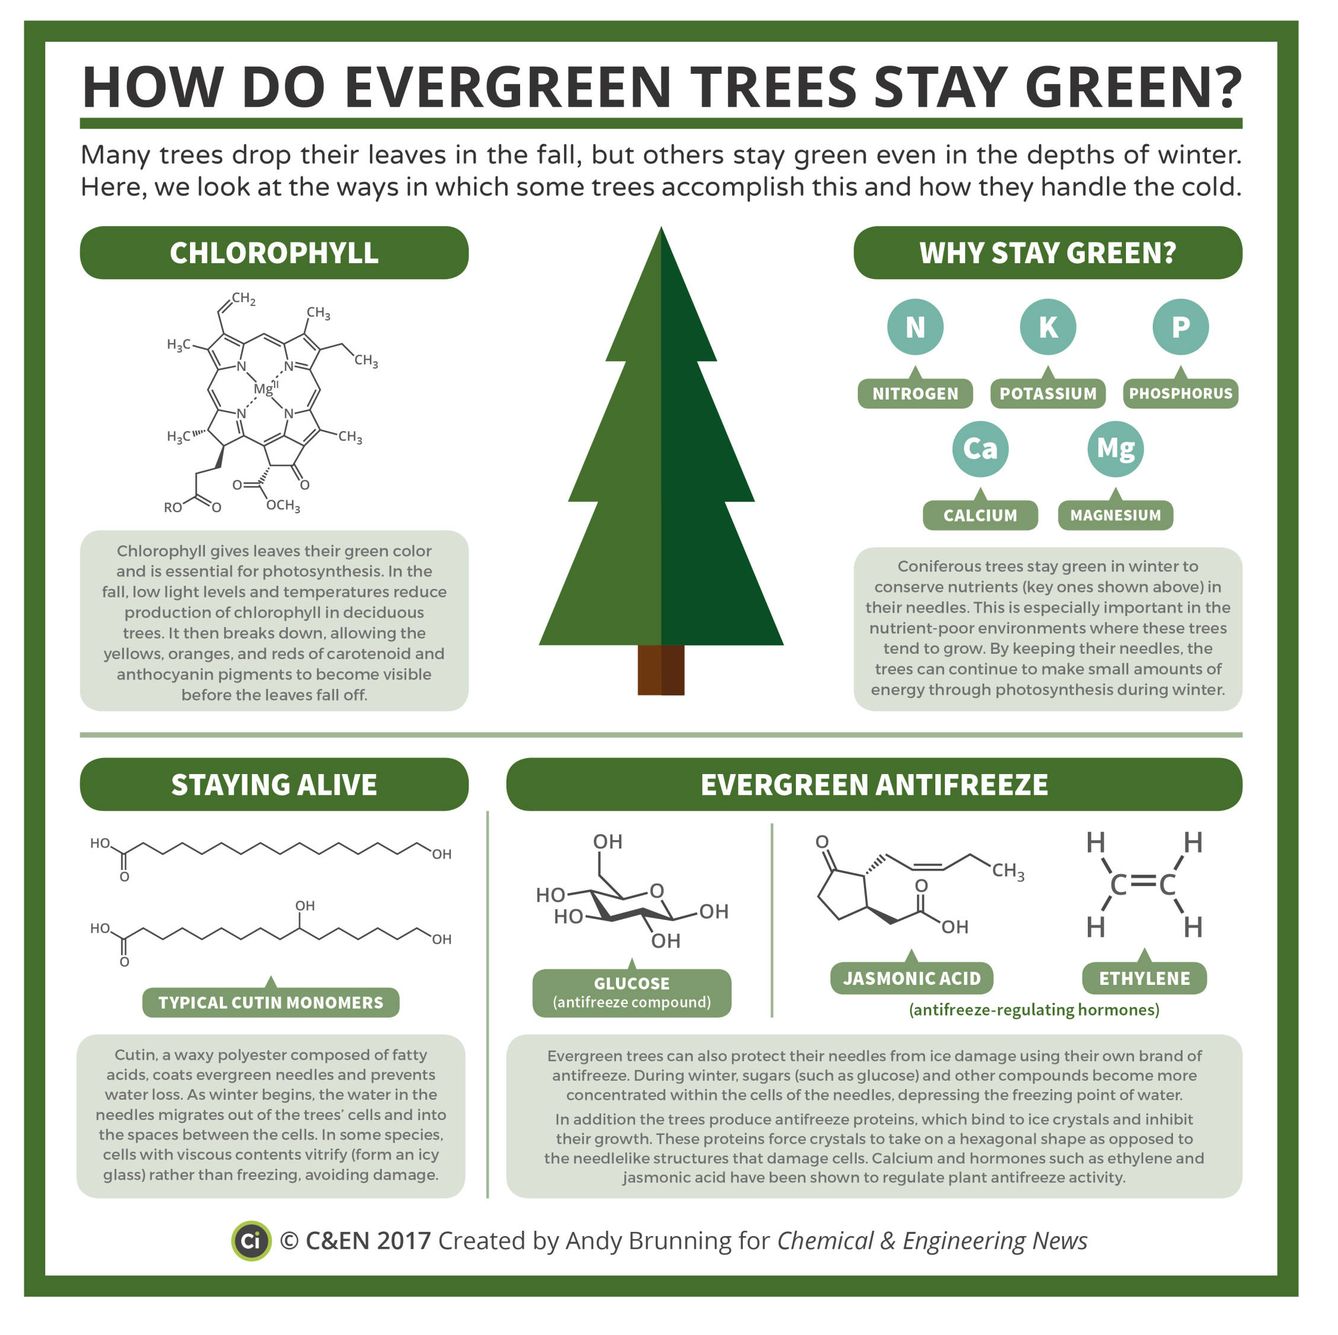 ¿Por qué algunos árboles siempre están verdes? (Andry Brunning para Chemical & Engineering News)